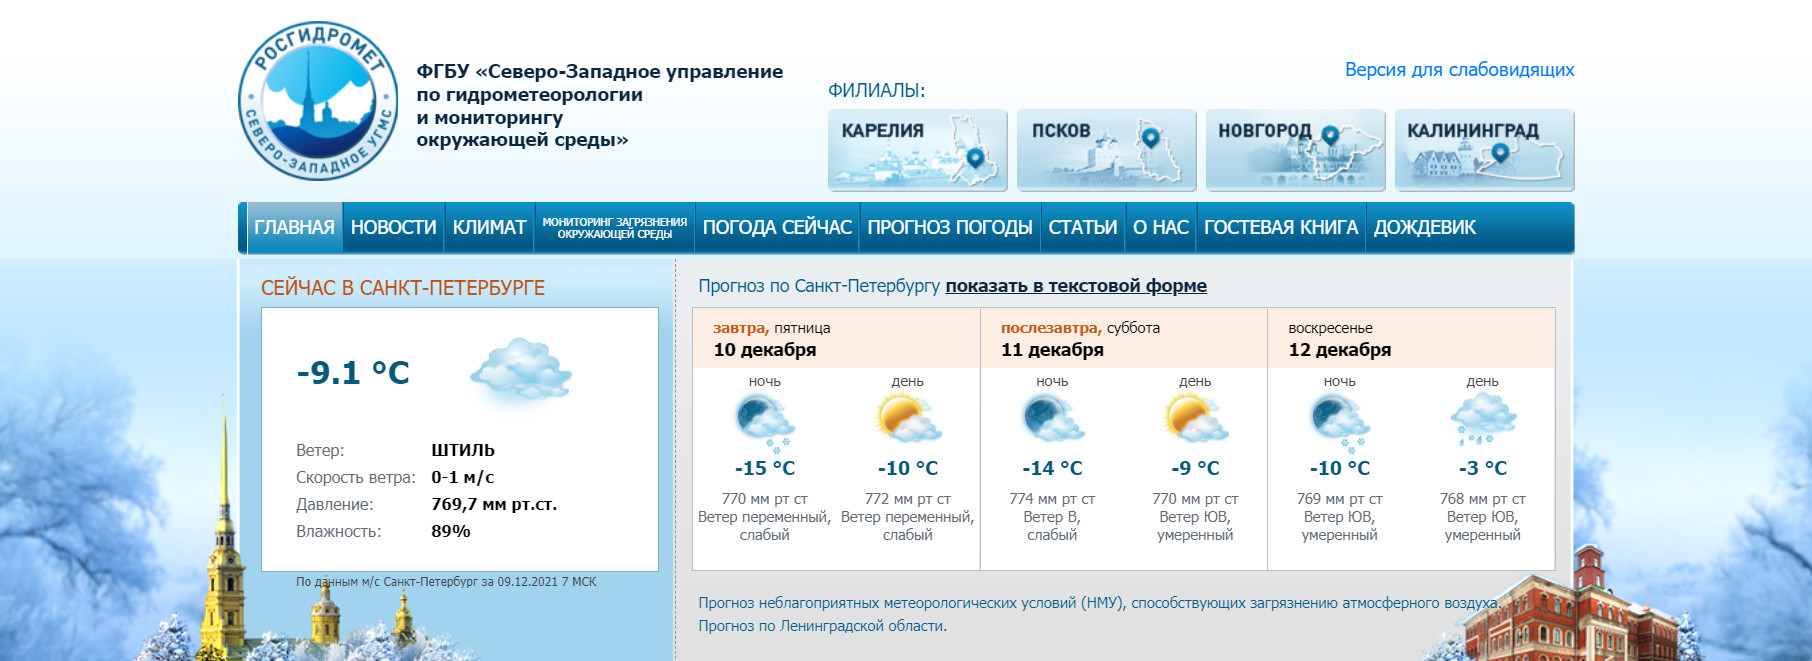 Скриншот с сайта СЗ УГМС www.meteo.nw.ru